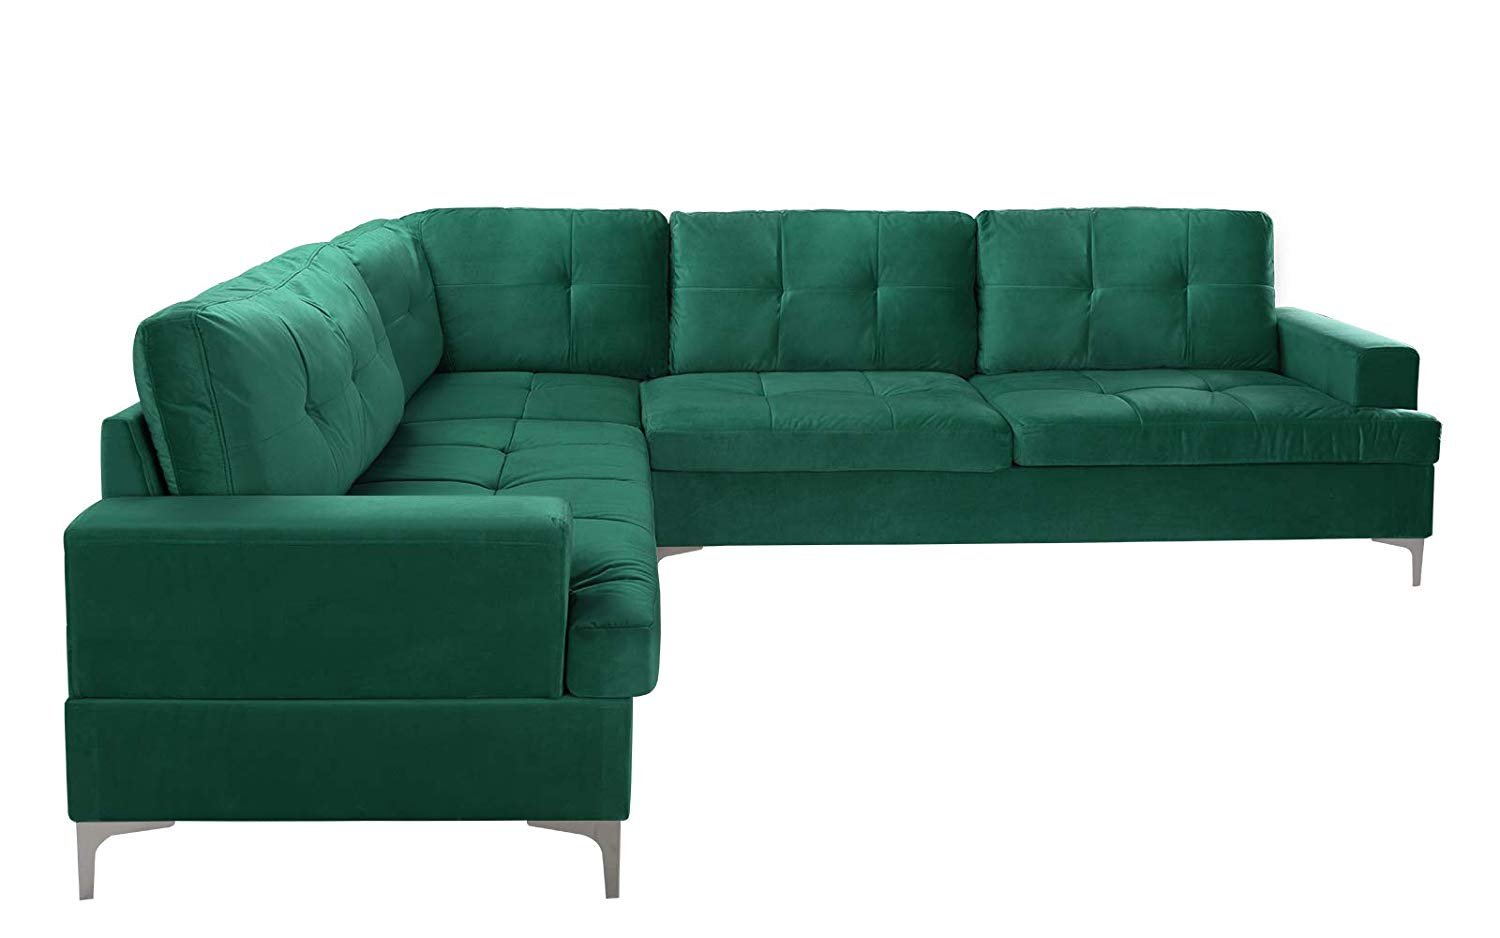 Large Tufted Velvet Sectional Sofa, Living Room L-Shape Modern Couch